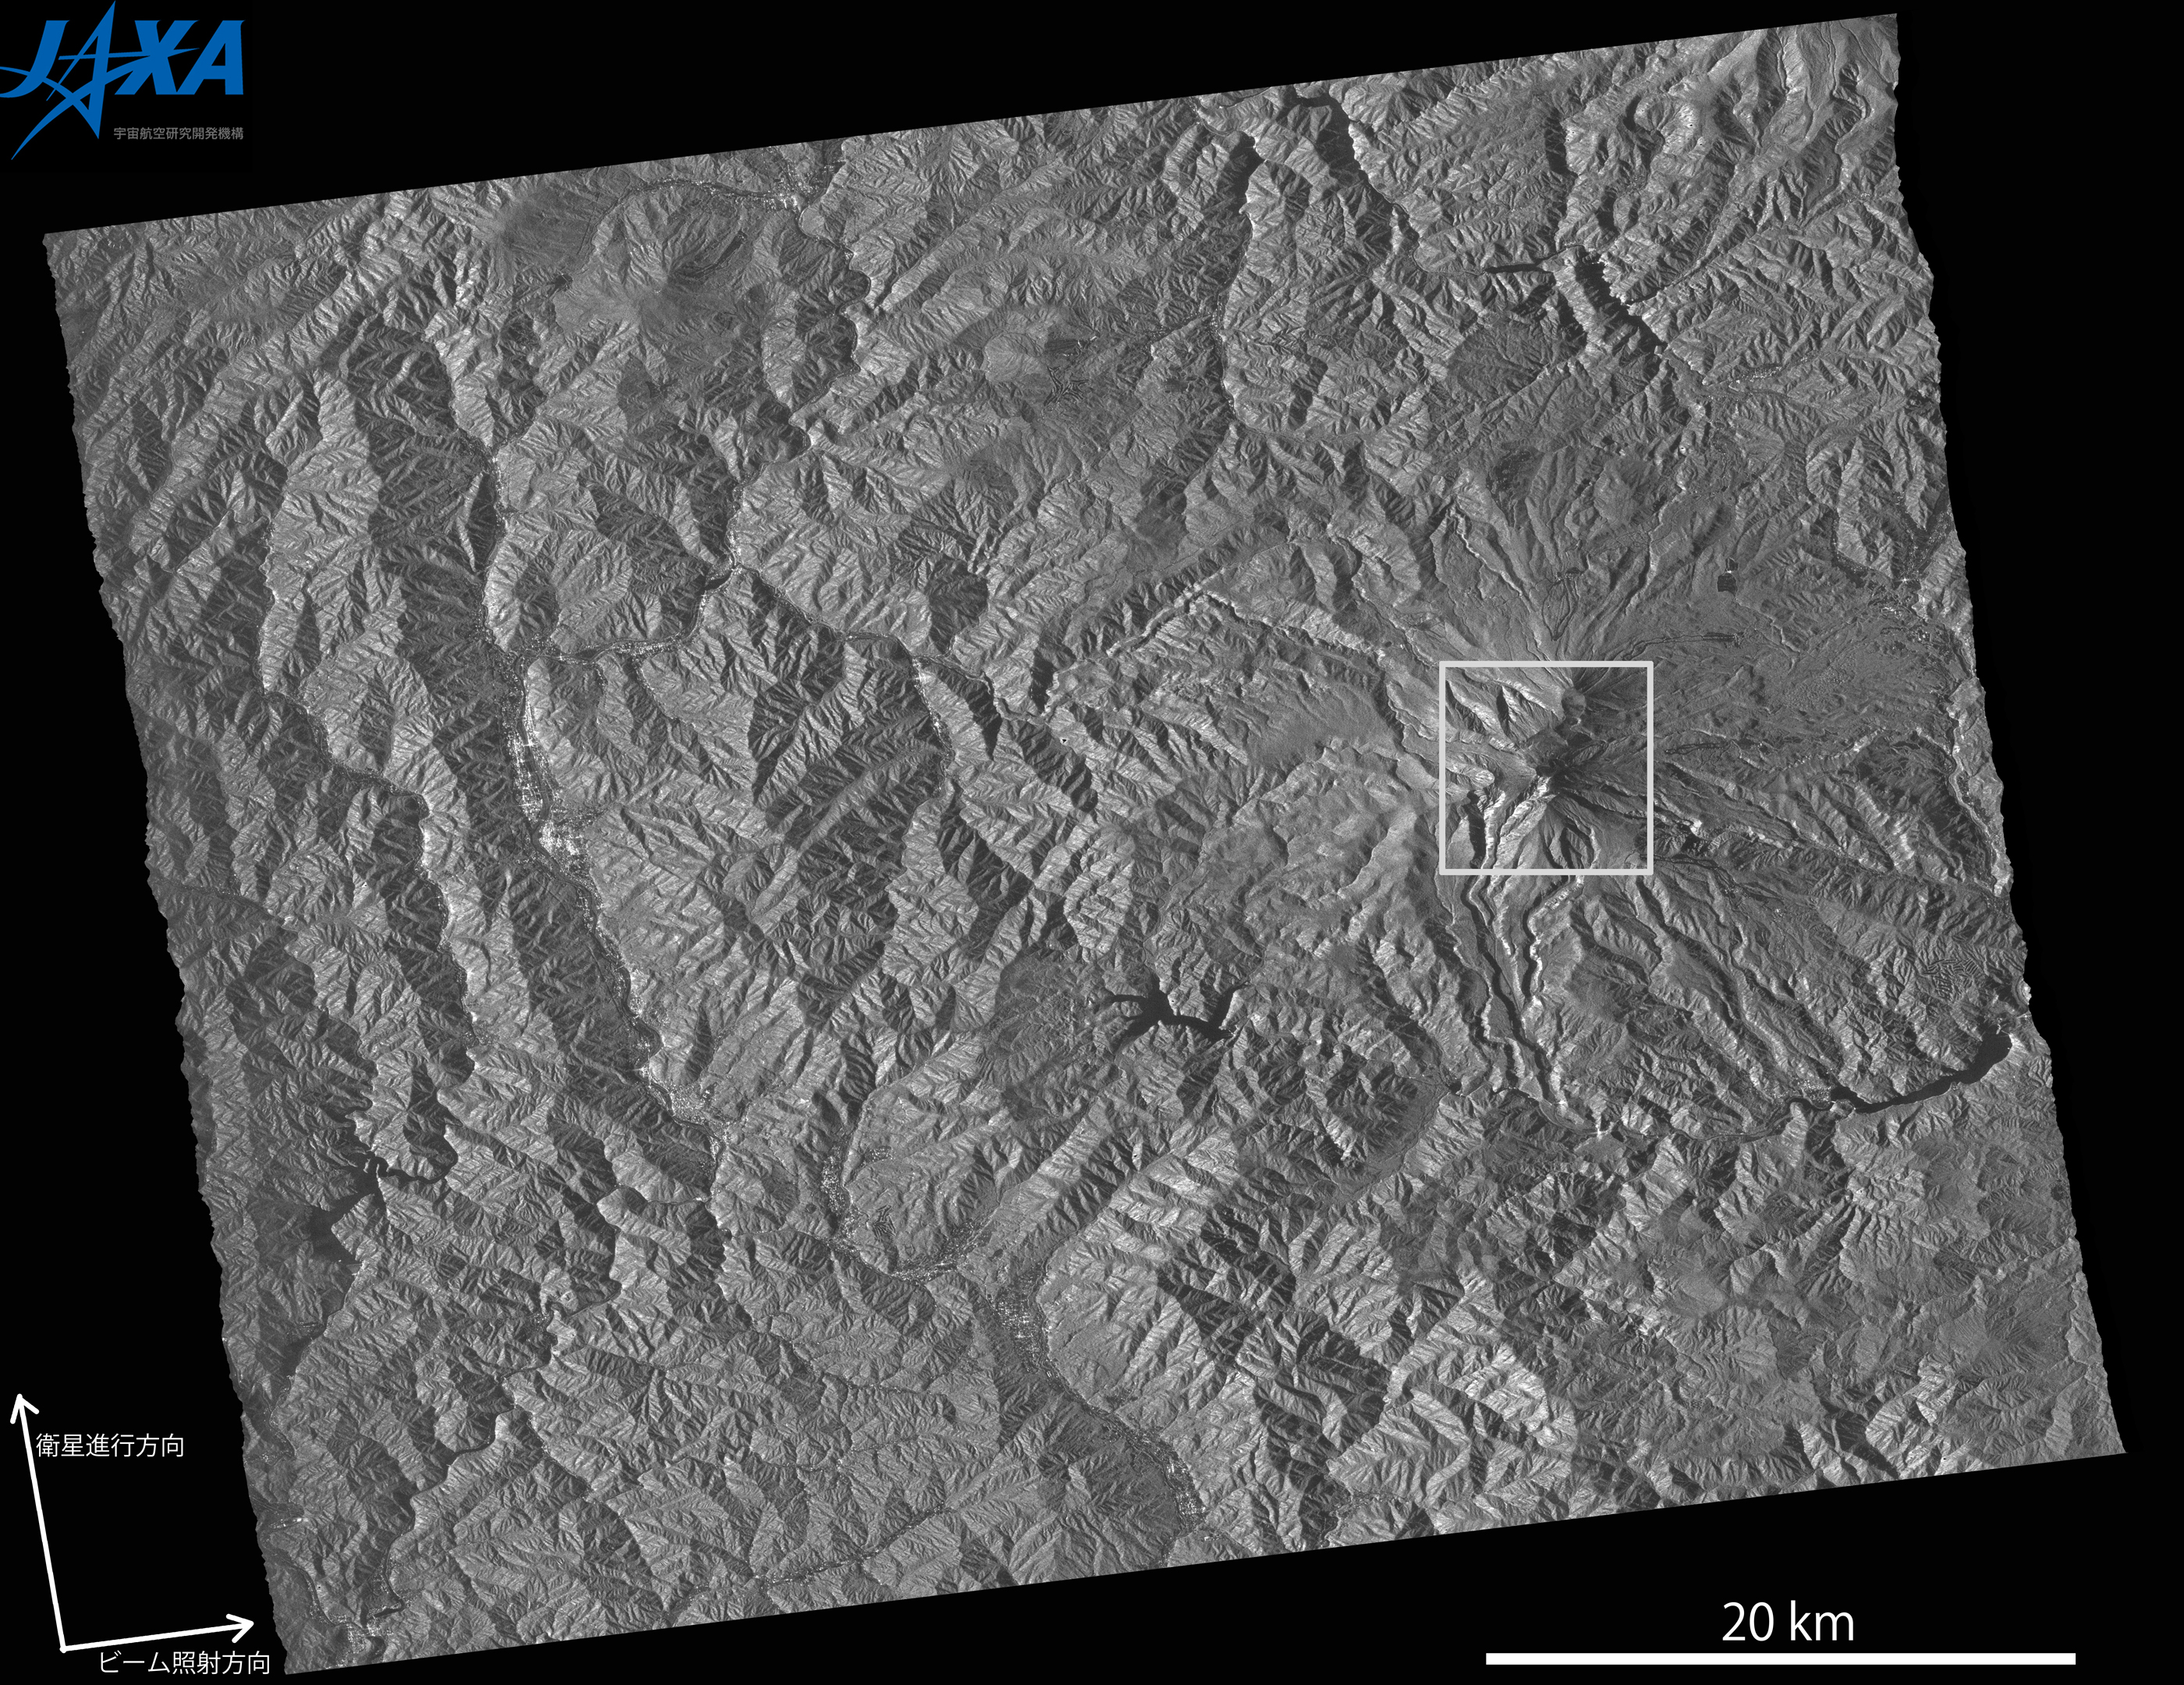 図4: 2014年9月29日PALSAR-2観測による御嶽山を含む約50km四方の強度画像